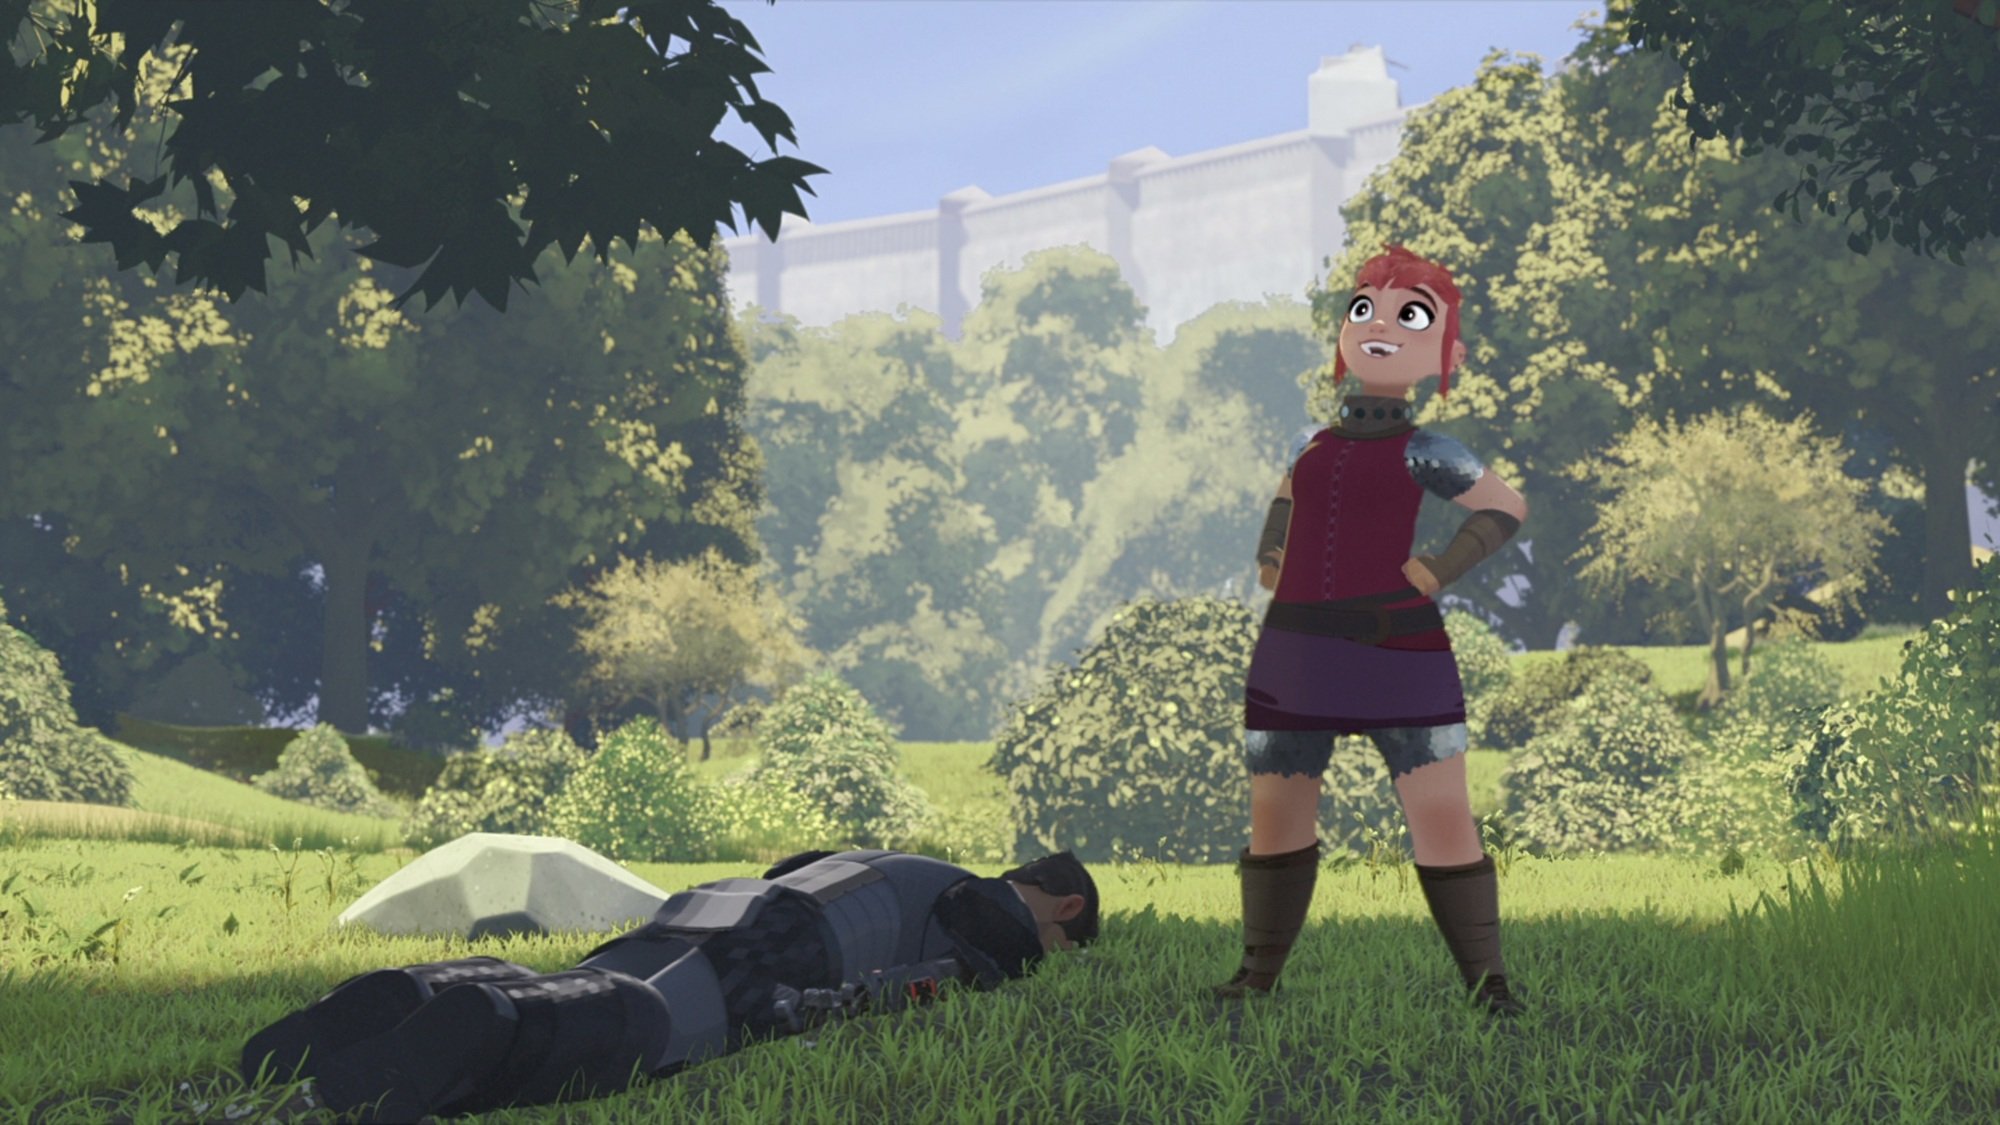 Une jeune fille aux cheveux roses se tient debout avec ses mains sur ses hanches en signe de triomphe, tandis qu'un chevalier en armure noire est allongé face contre terre dans l'herbe à côté d'elle.